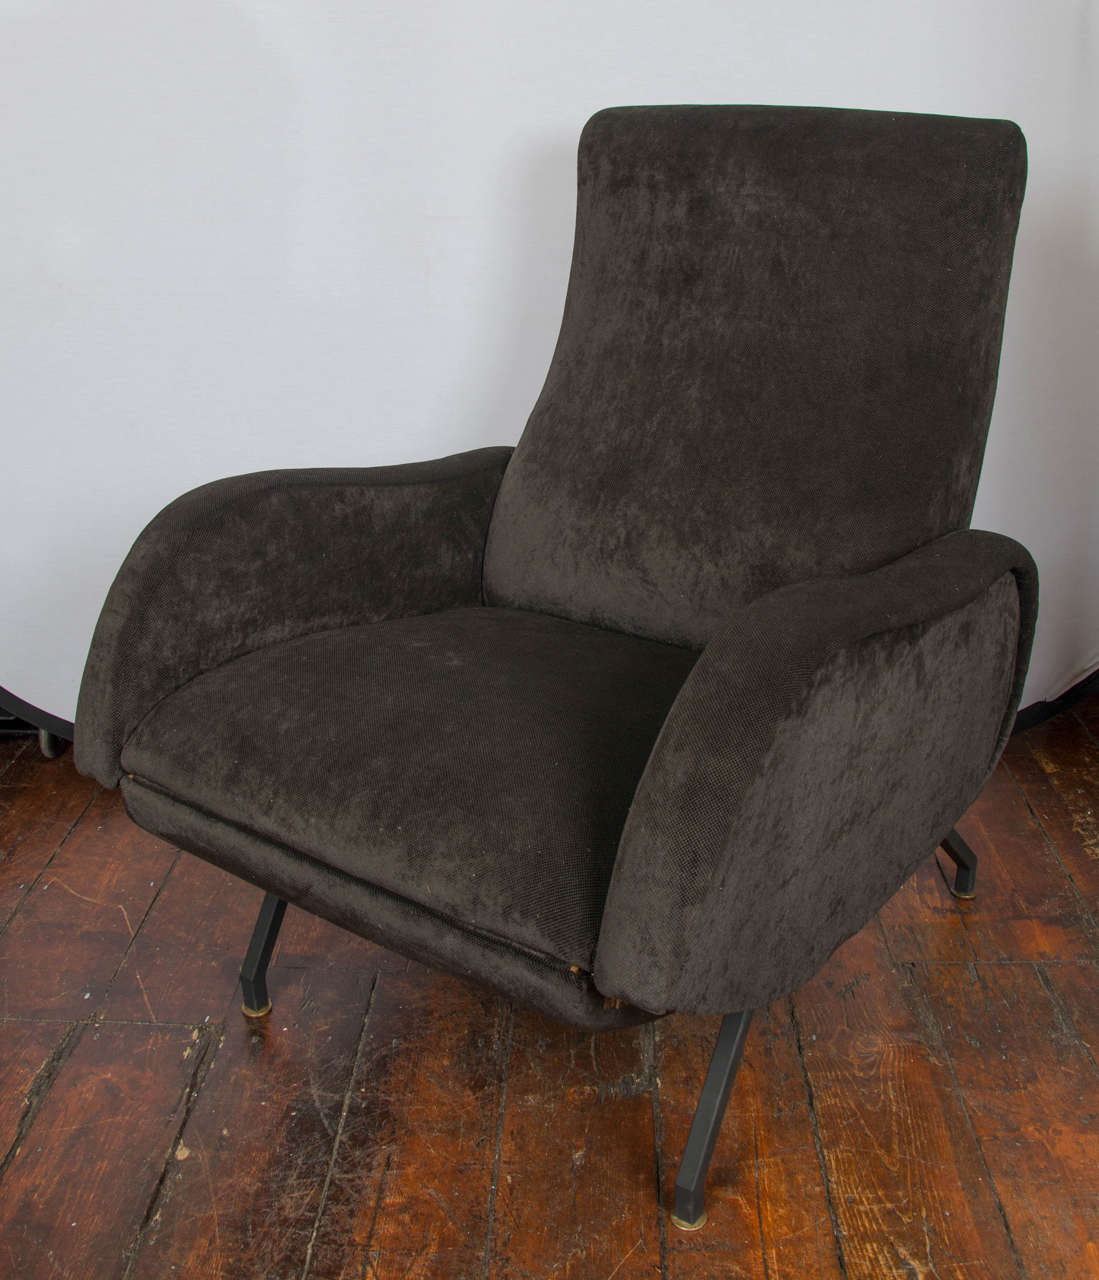 Italian 1950s reclinable armchair.